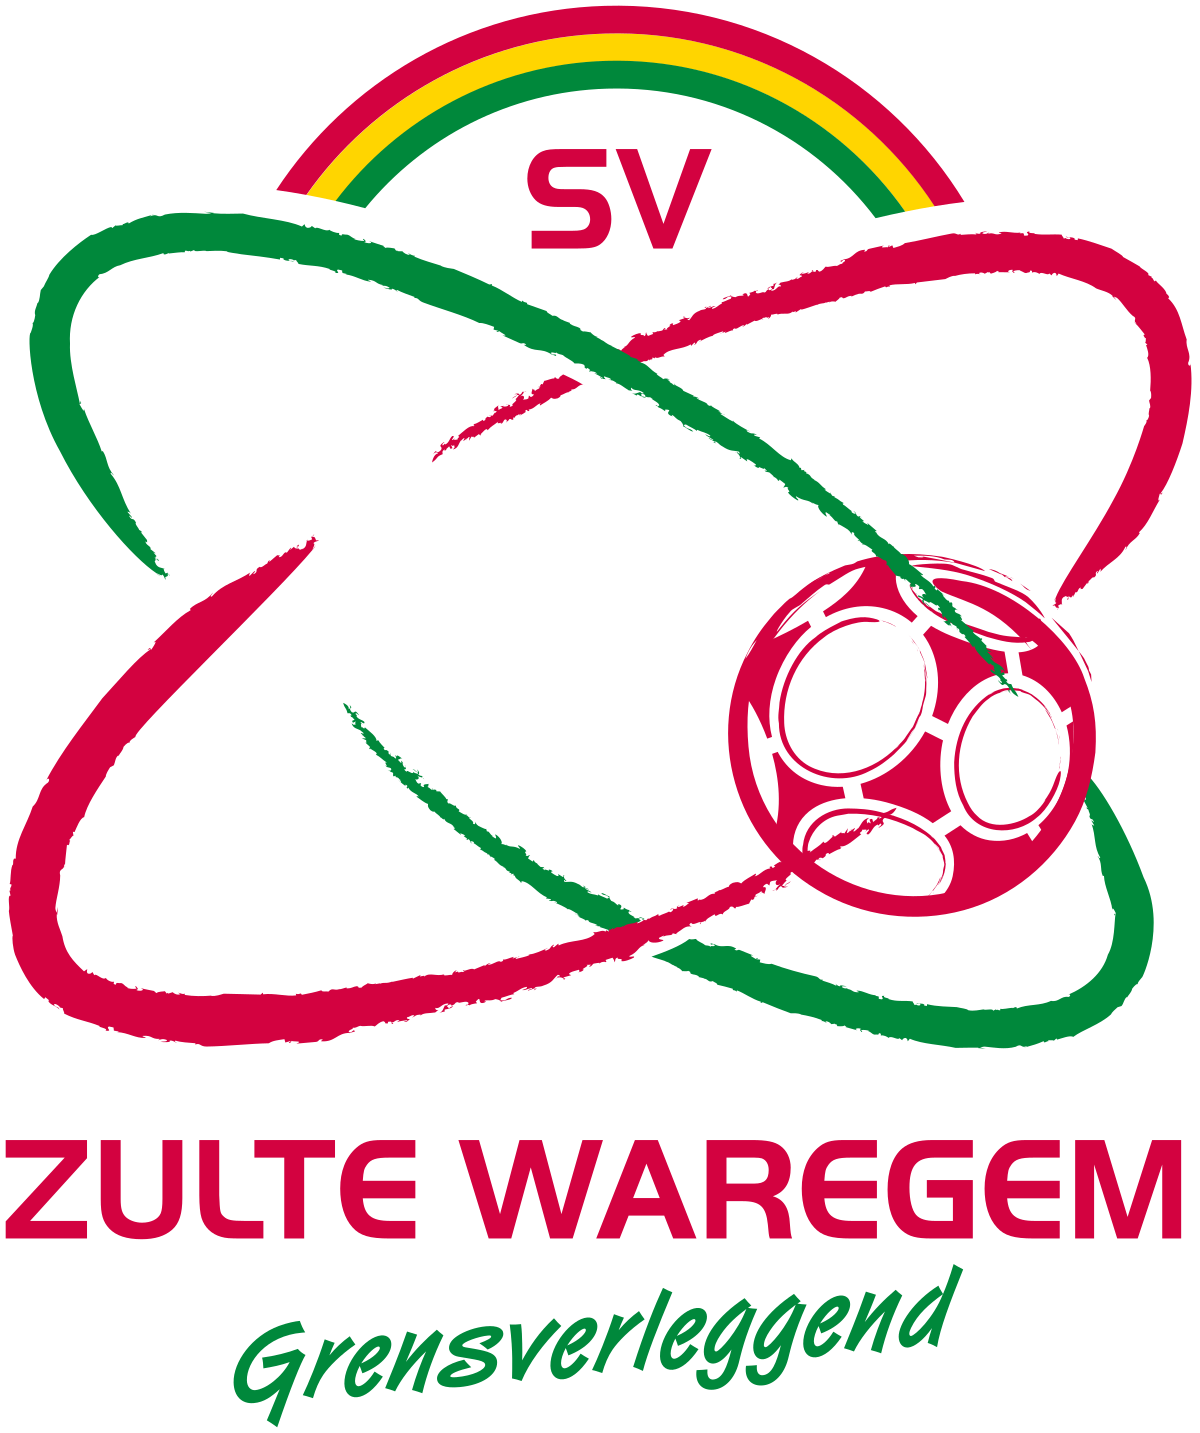 Zulte-Waregem-2 W logo